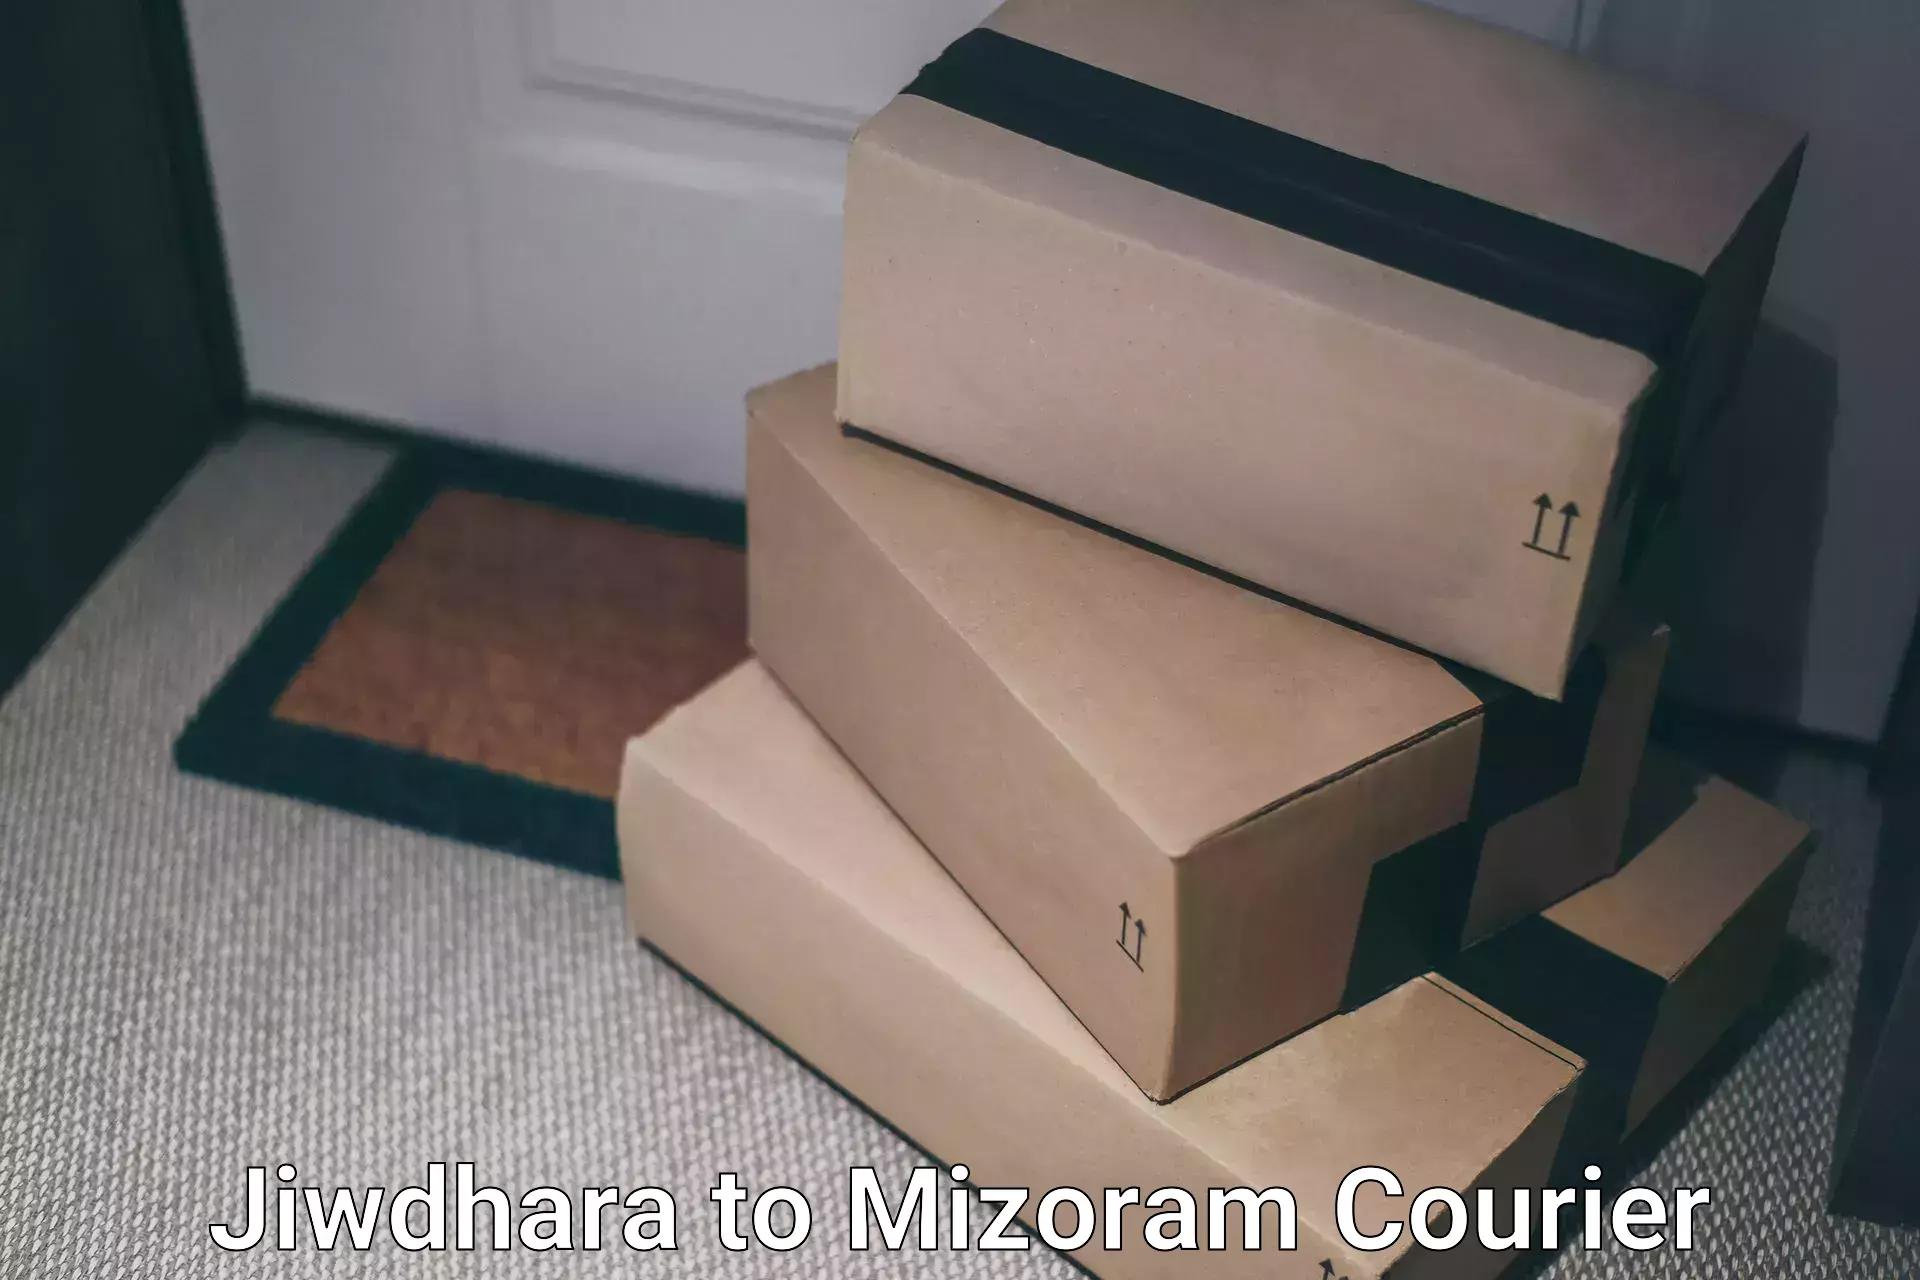 Express postal services Jiwdhara to Mizoram